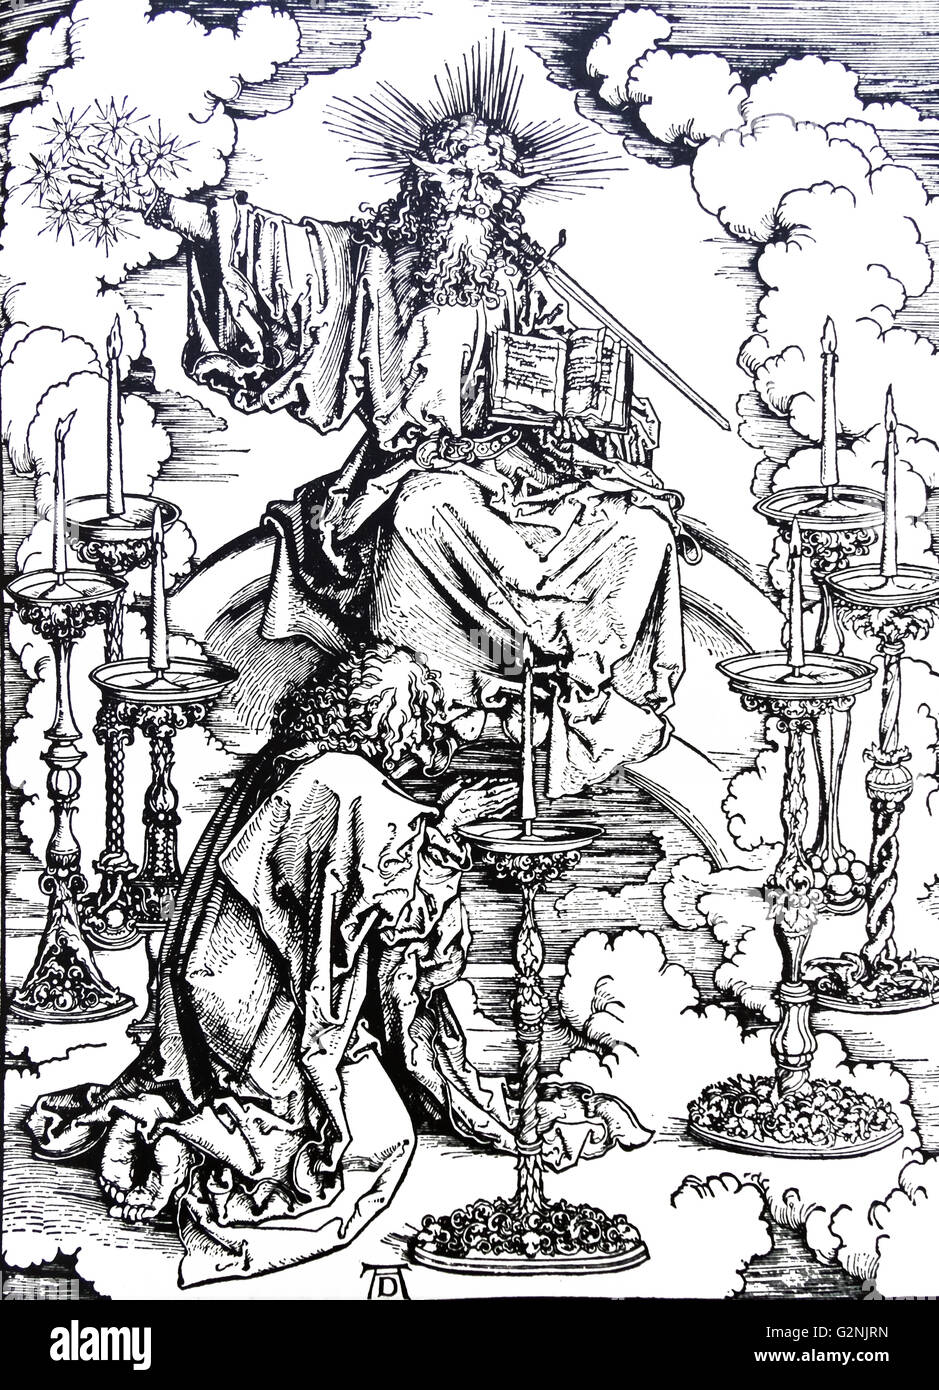 Albrecht Dürer's visuelle Interpretation von St John's Vision von Gott. Dürer war ein deutscher Maler, Kupferstecher, Grafiker, Mathematiker und Theoretiker aus Nürnberg. Vom 15. Jahrhundert Stockfoto